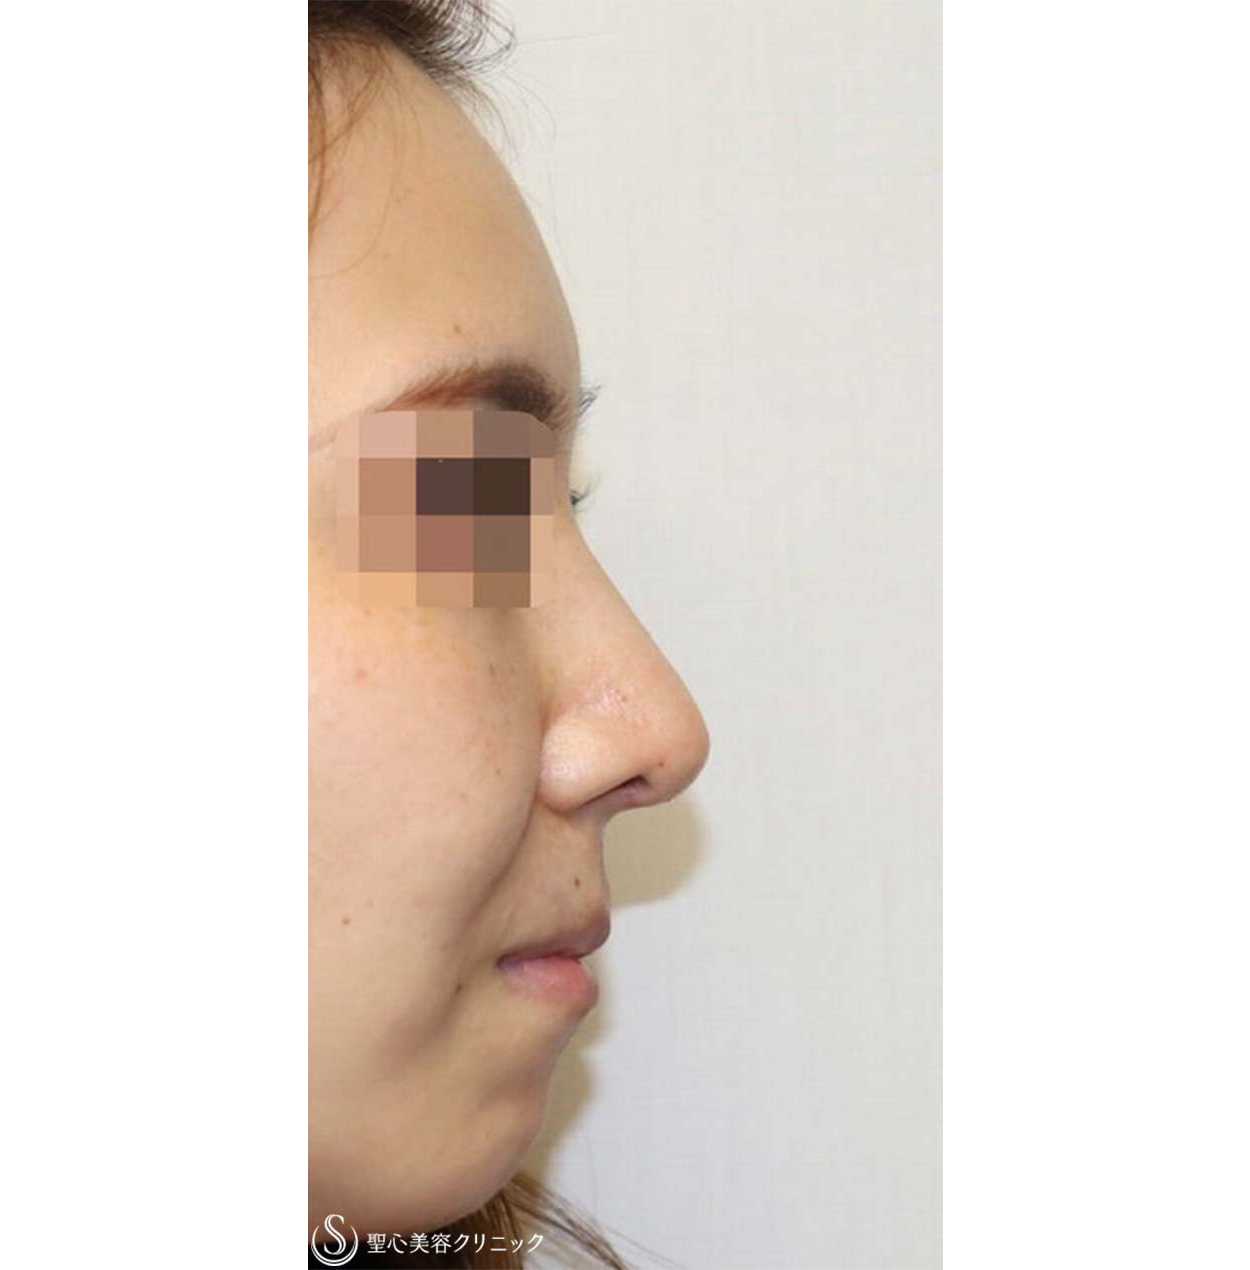 鼻中隔延長・鼻尖形成術・鼻背軟骨移植